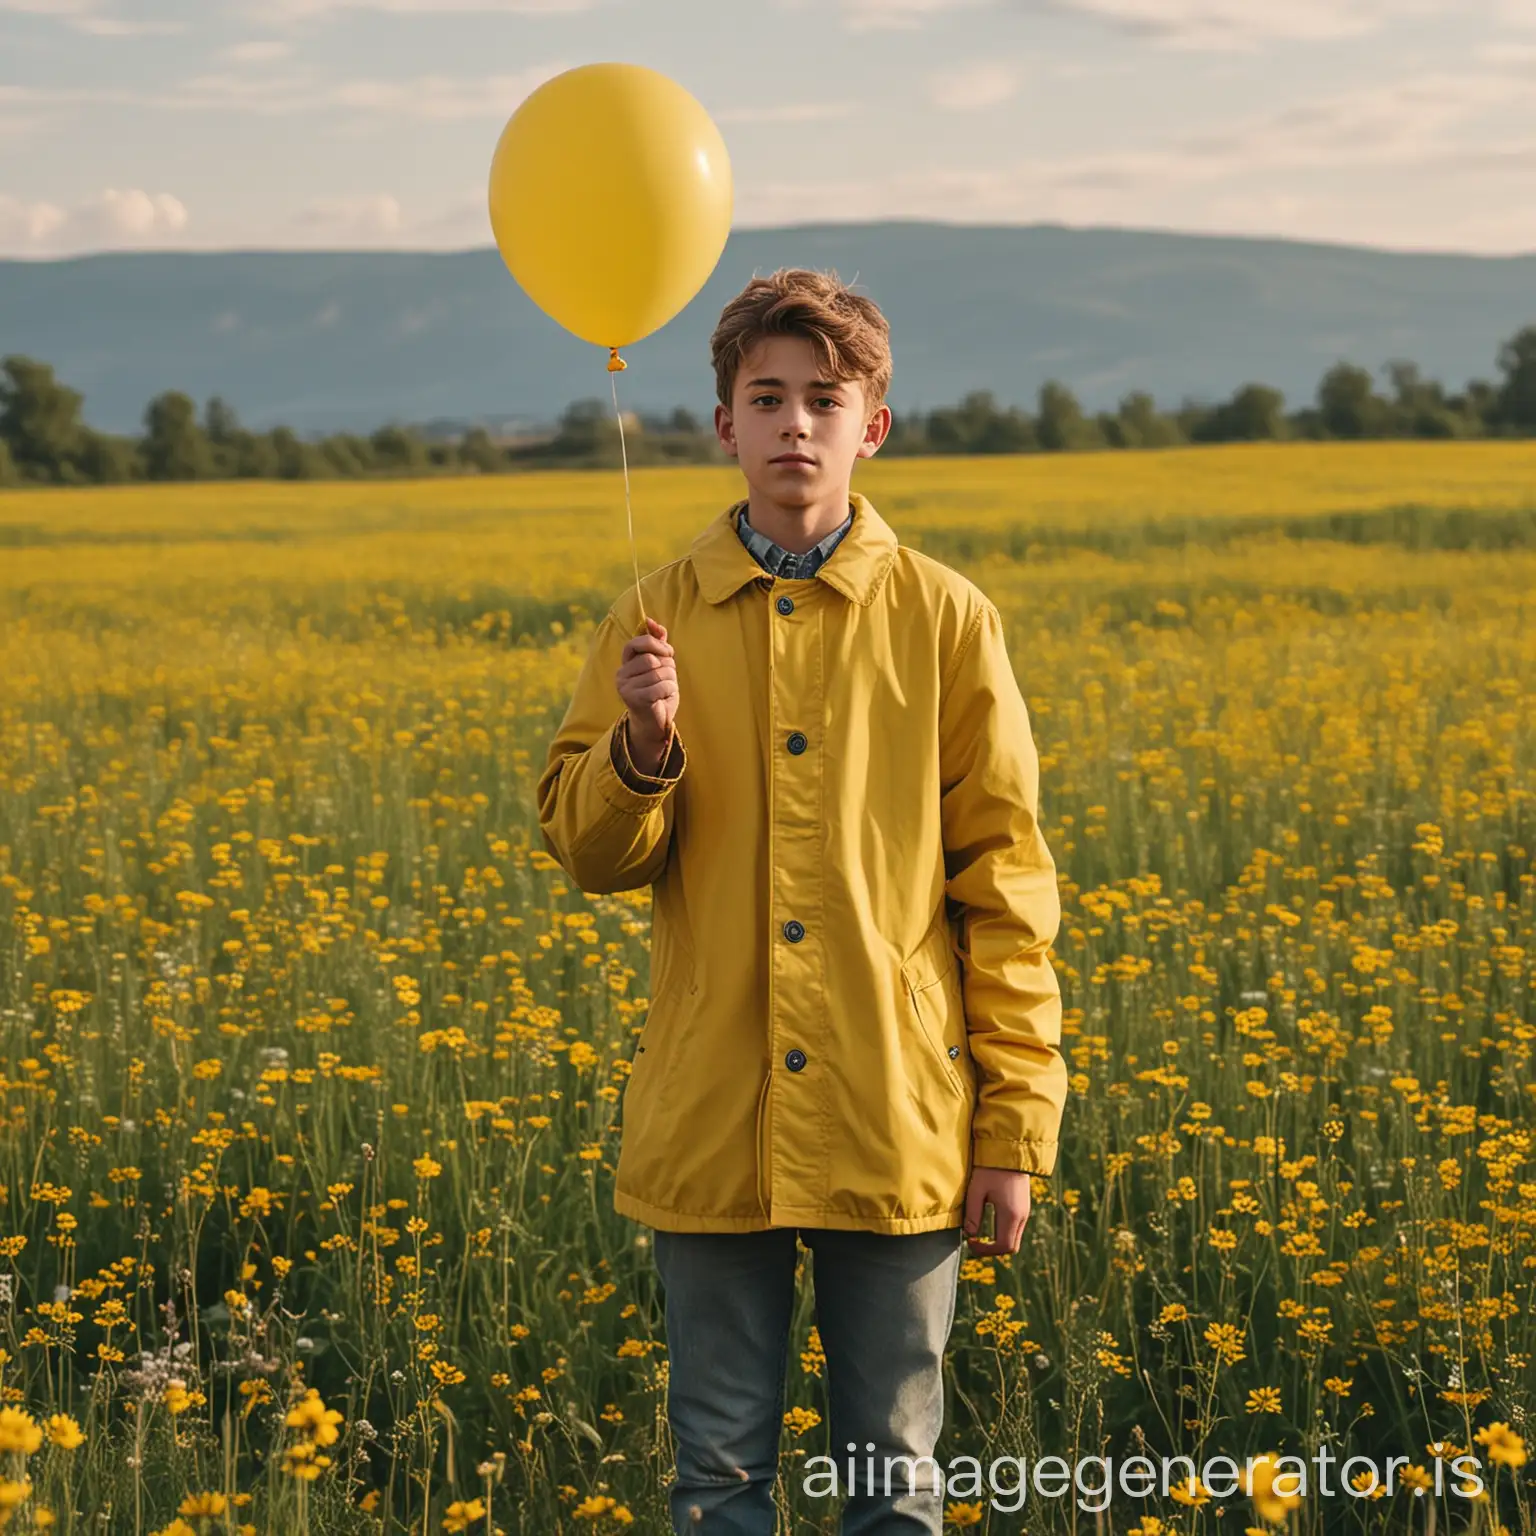 Teenage-Boy-in-Yellow-Coat-Holding-Balloon-in-Meadow-Landscape